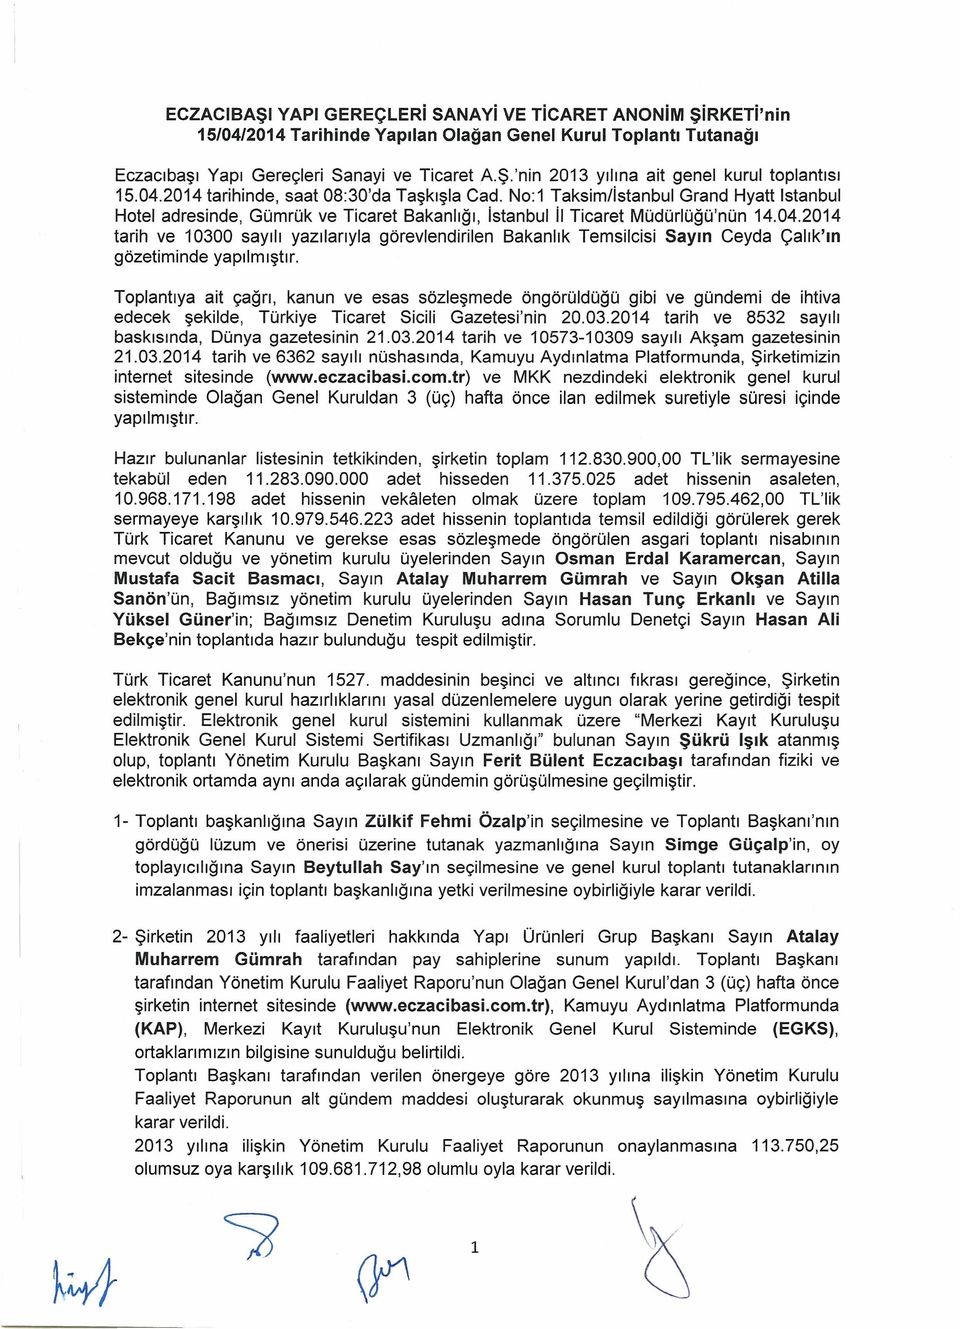 Toplantıya ait çağrı, kanun ve esas sözleşmede öngörüldüğü gibi ve gündemi de ihtiva edecek şekilde, Türkiye Ticaret Sicili Gazetesi'nin 20.03.